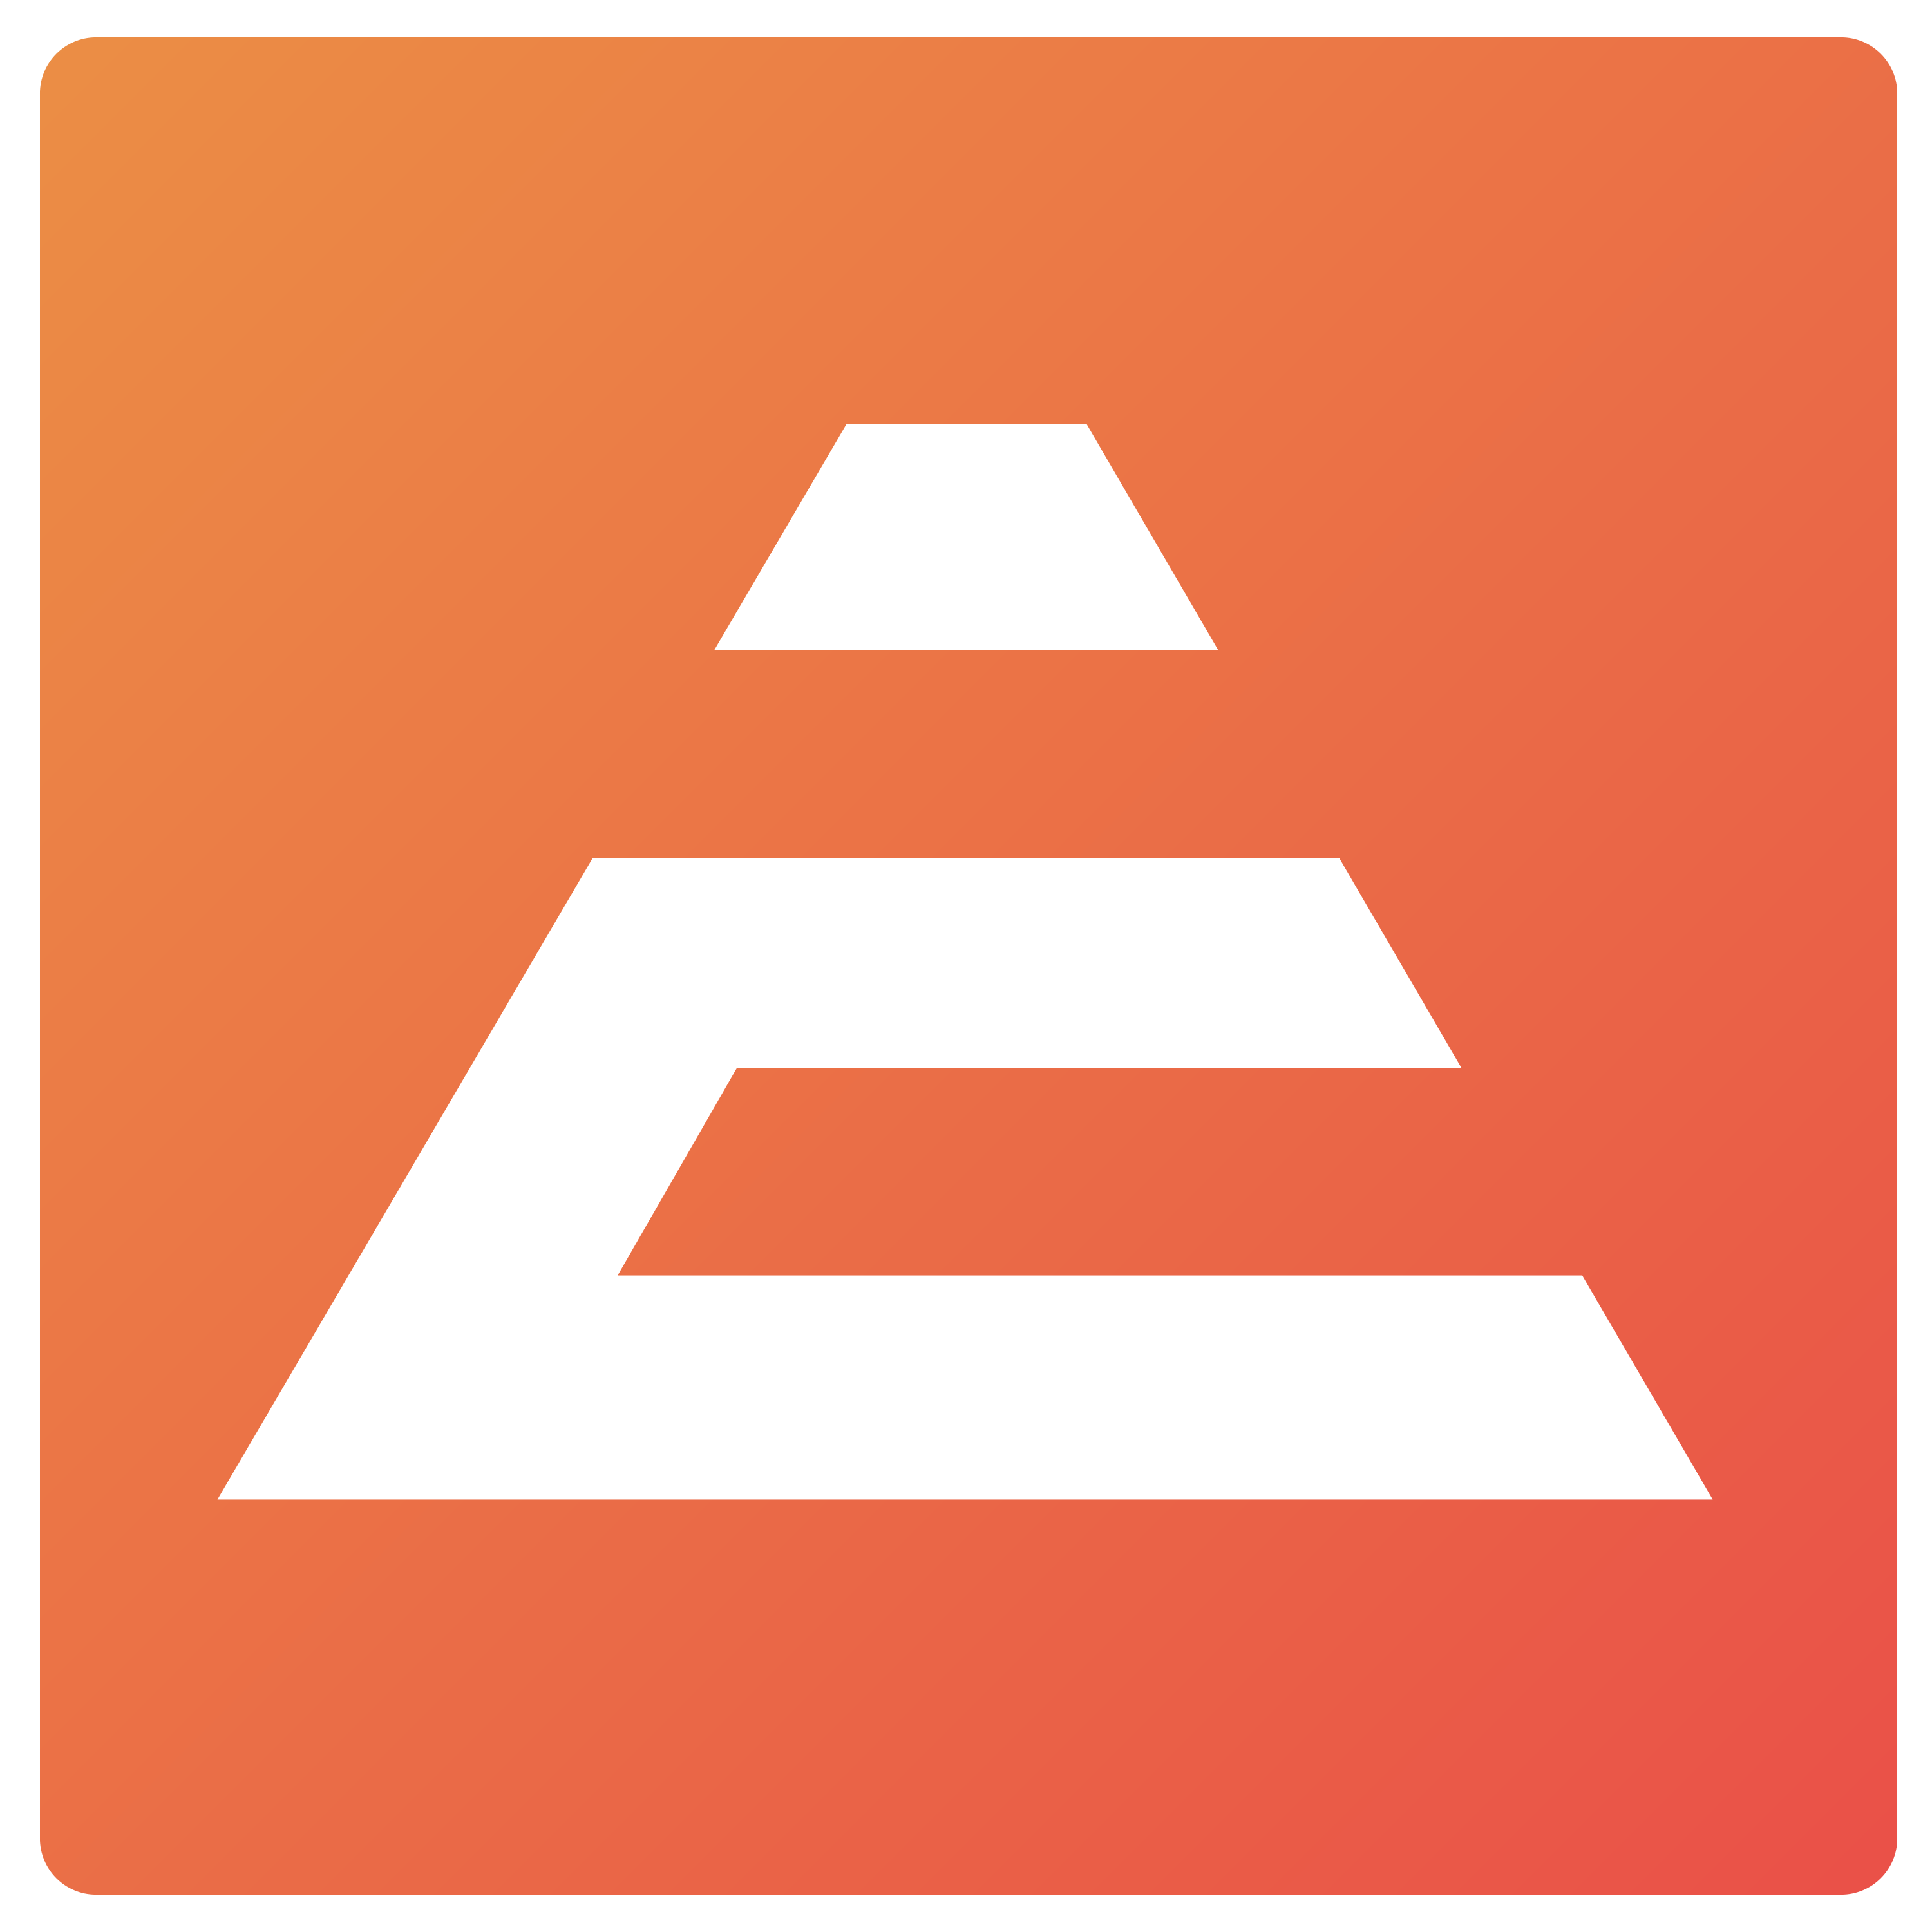 Evolve company logo